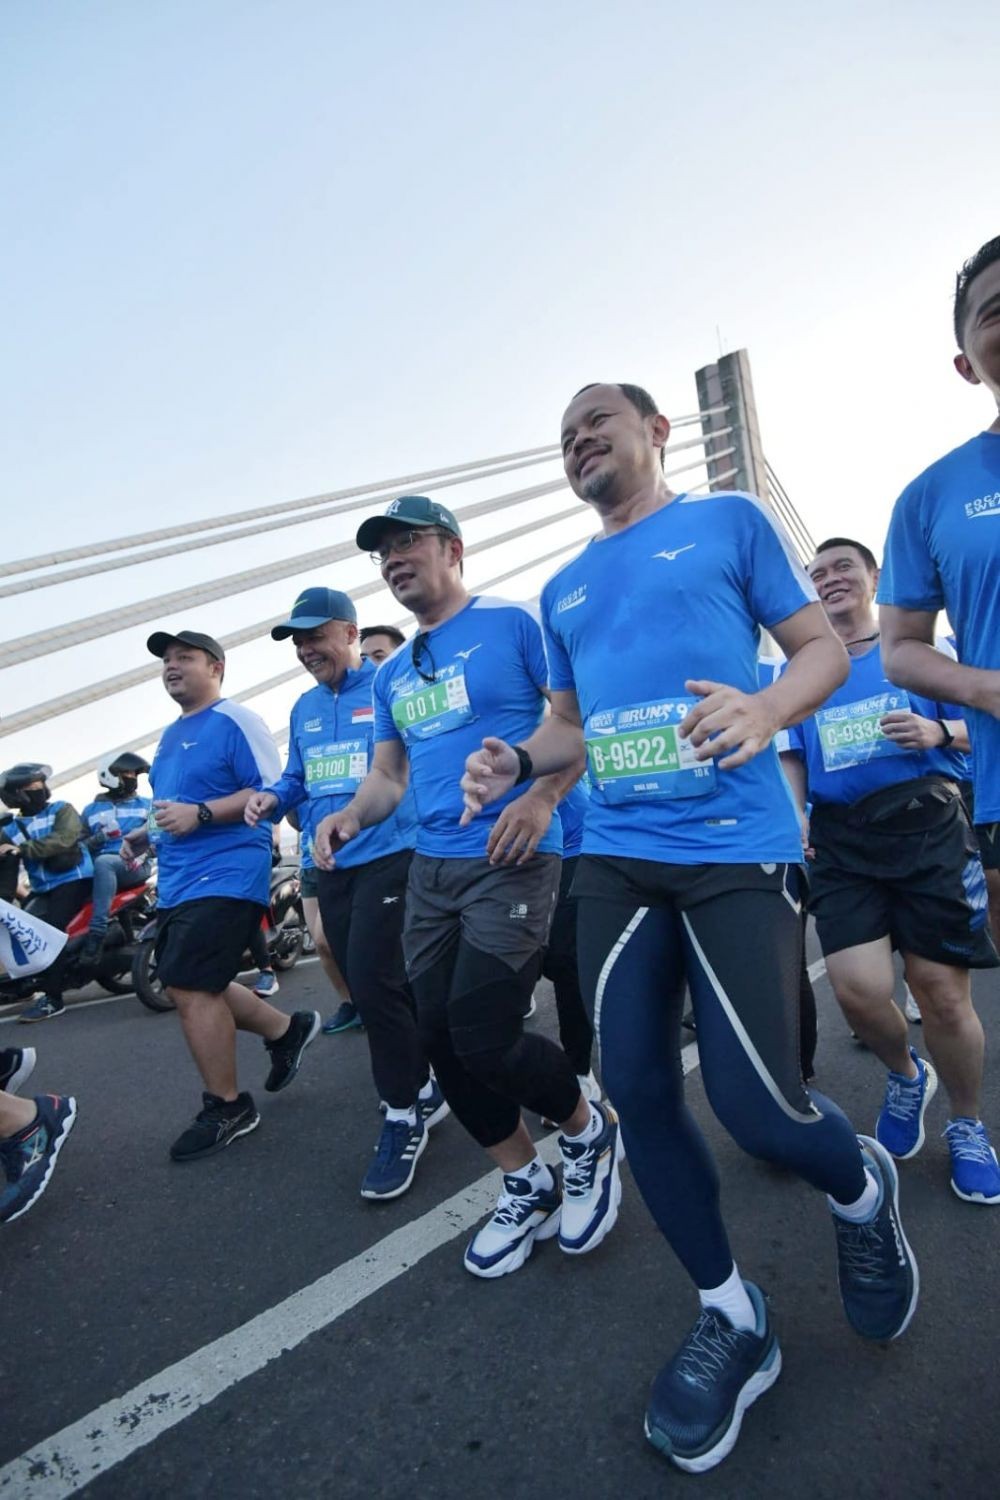 Pocari Sweat Run, Langkah Mengggeliatkan Ekonomi Lewat Sport Tourism